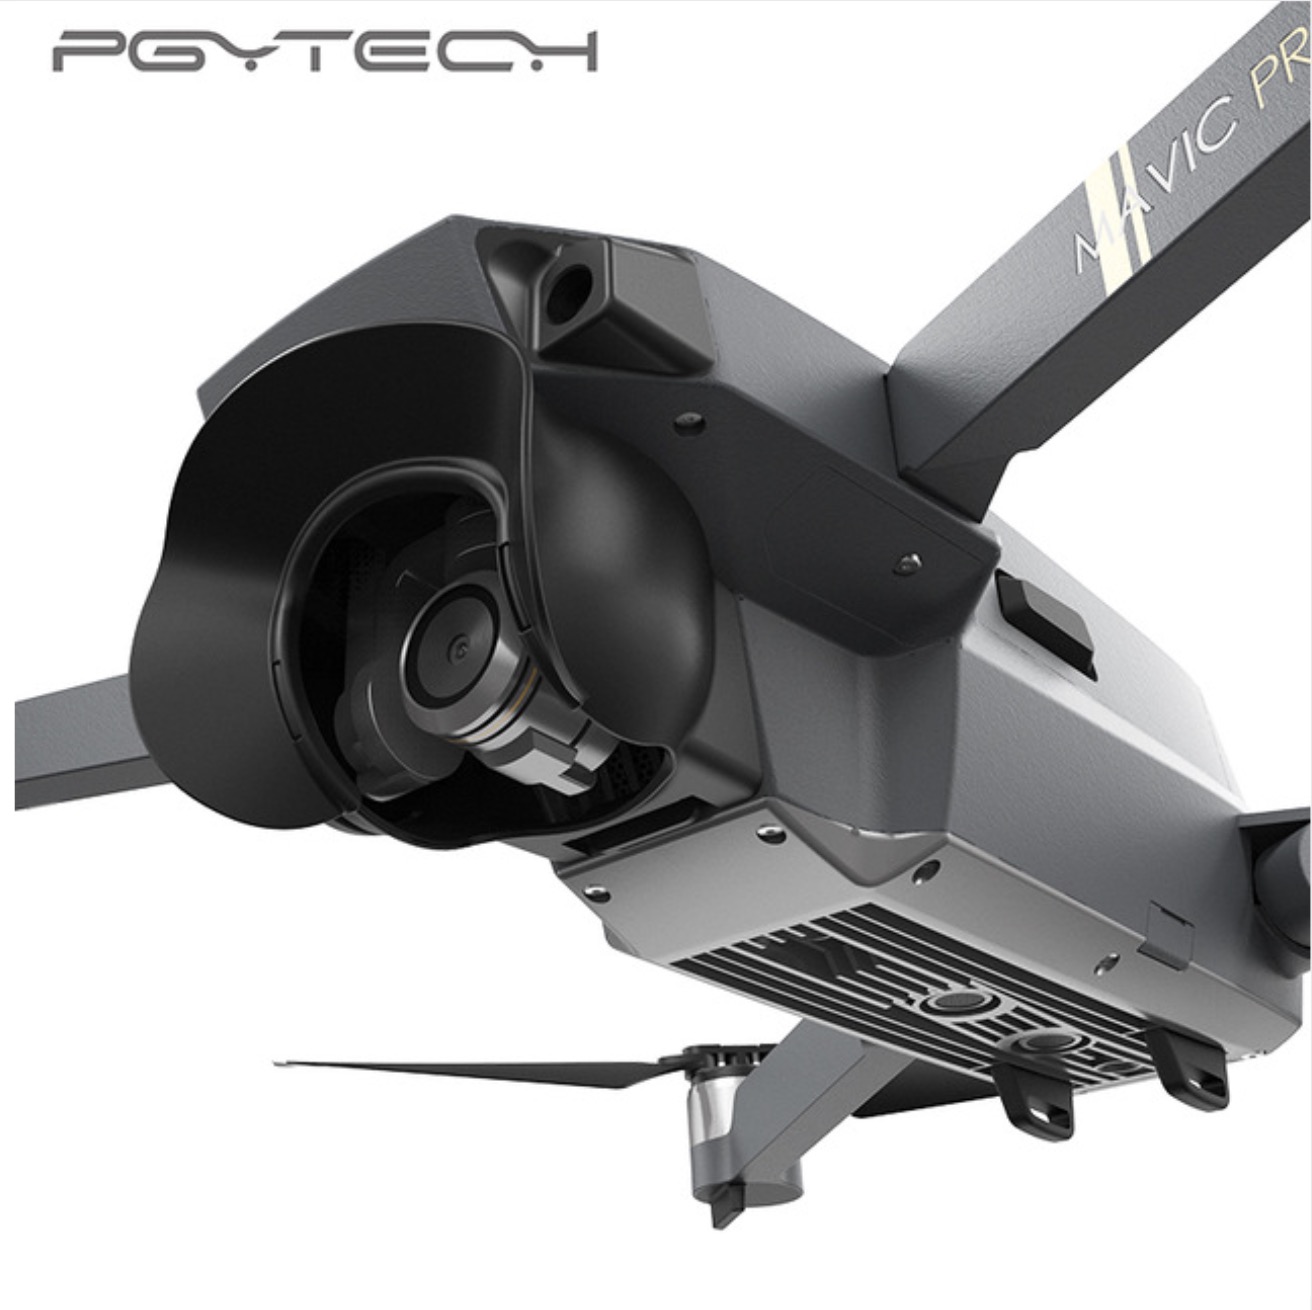 Pgytech objektiv kamera beskytter solskærm blænding skjold kardan skygge kamera mavic pro modlysblænde til dji mavic pro tilbehør